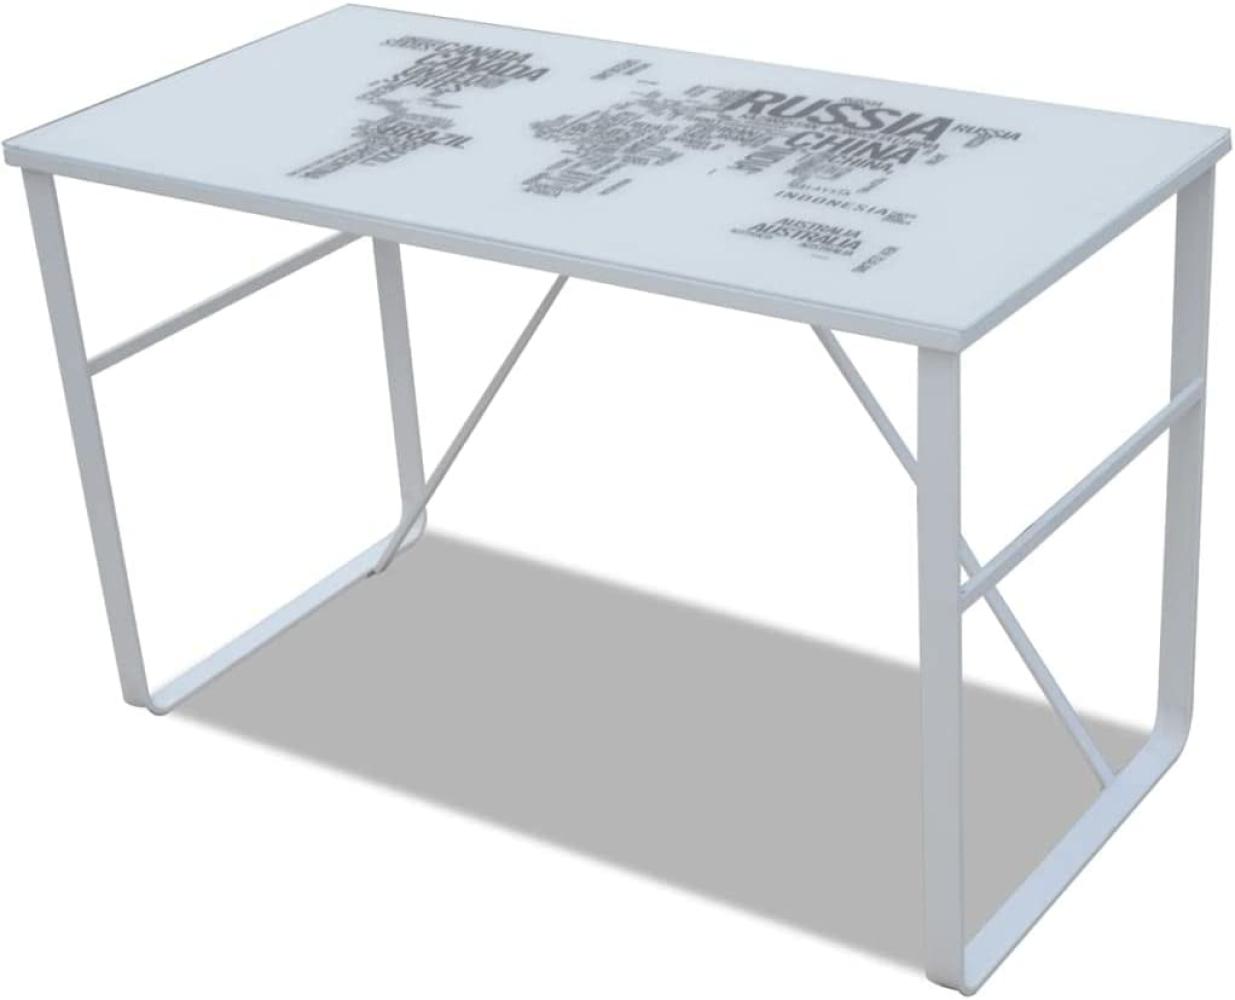 Schreibtisch mit Weltkarte, schwarz/ weiß, 120 x 60 x 75 cm Bild 1